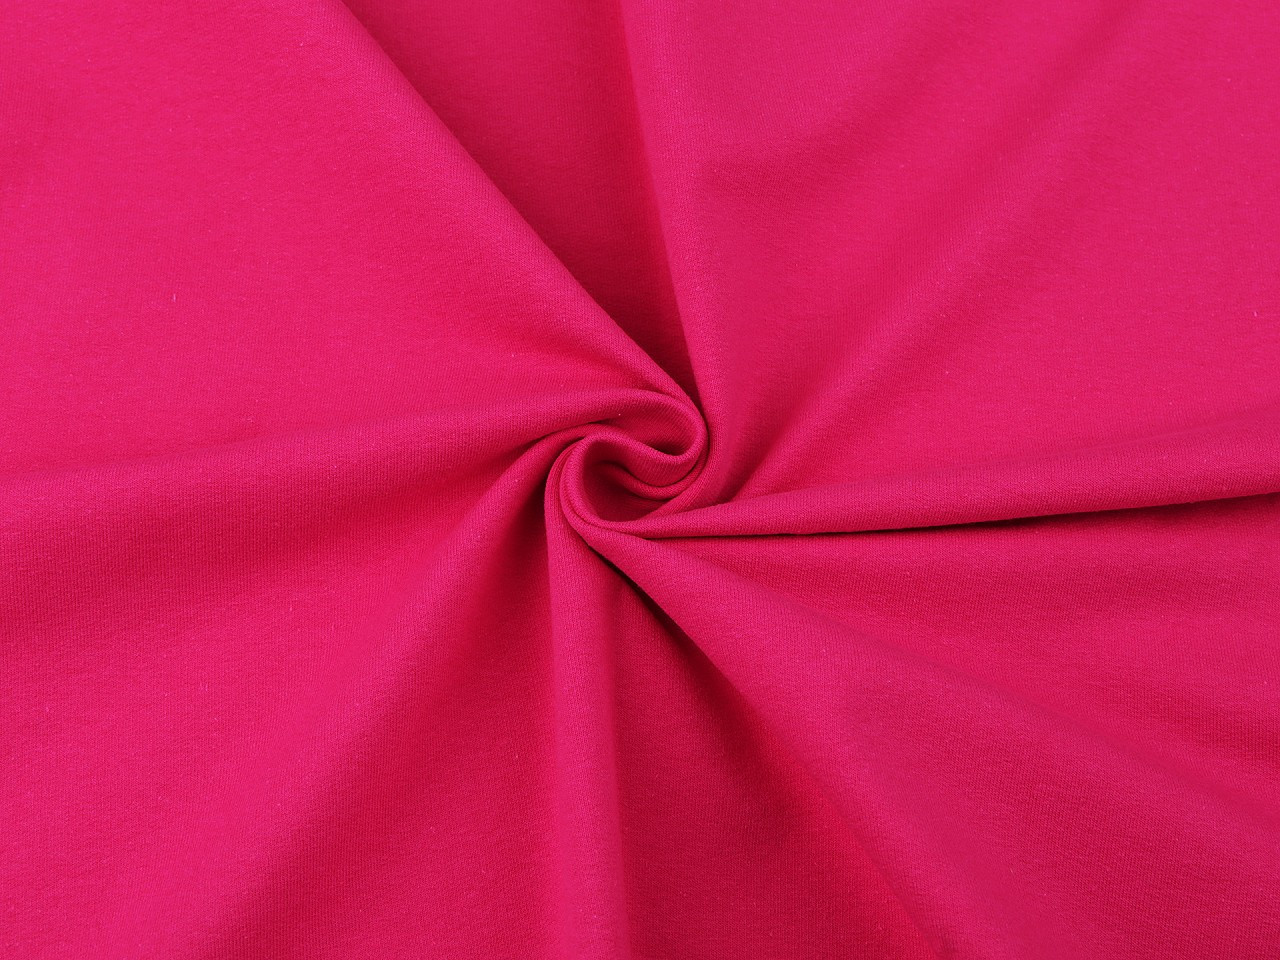 Teplákovina bavlněná nepočesaná jednobarevná, barva 6 (2053) pink